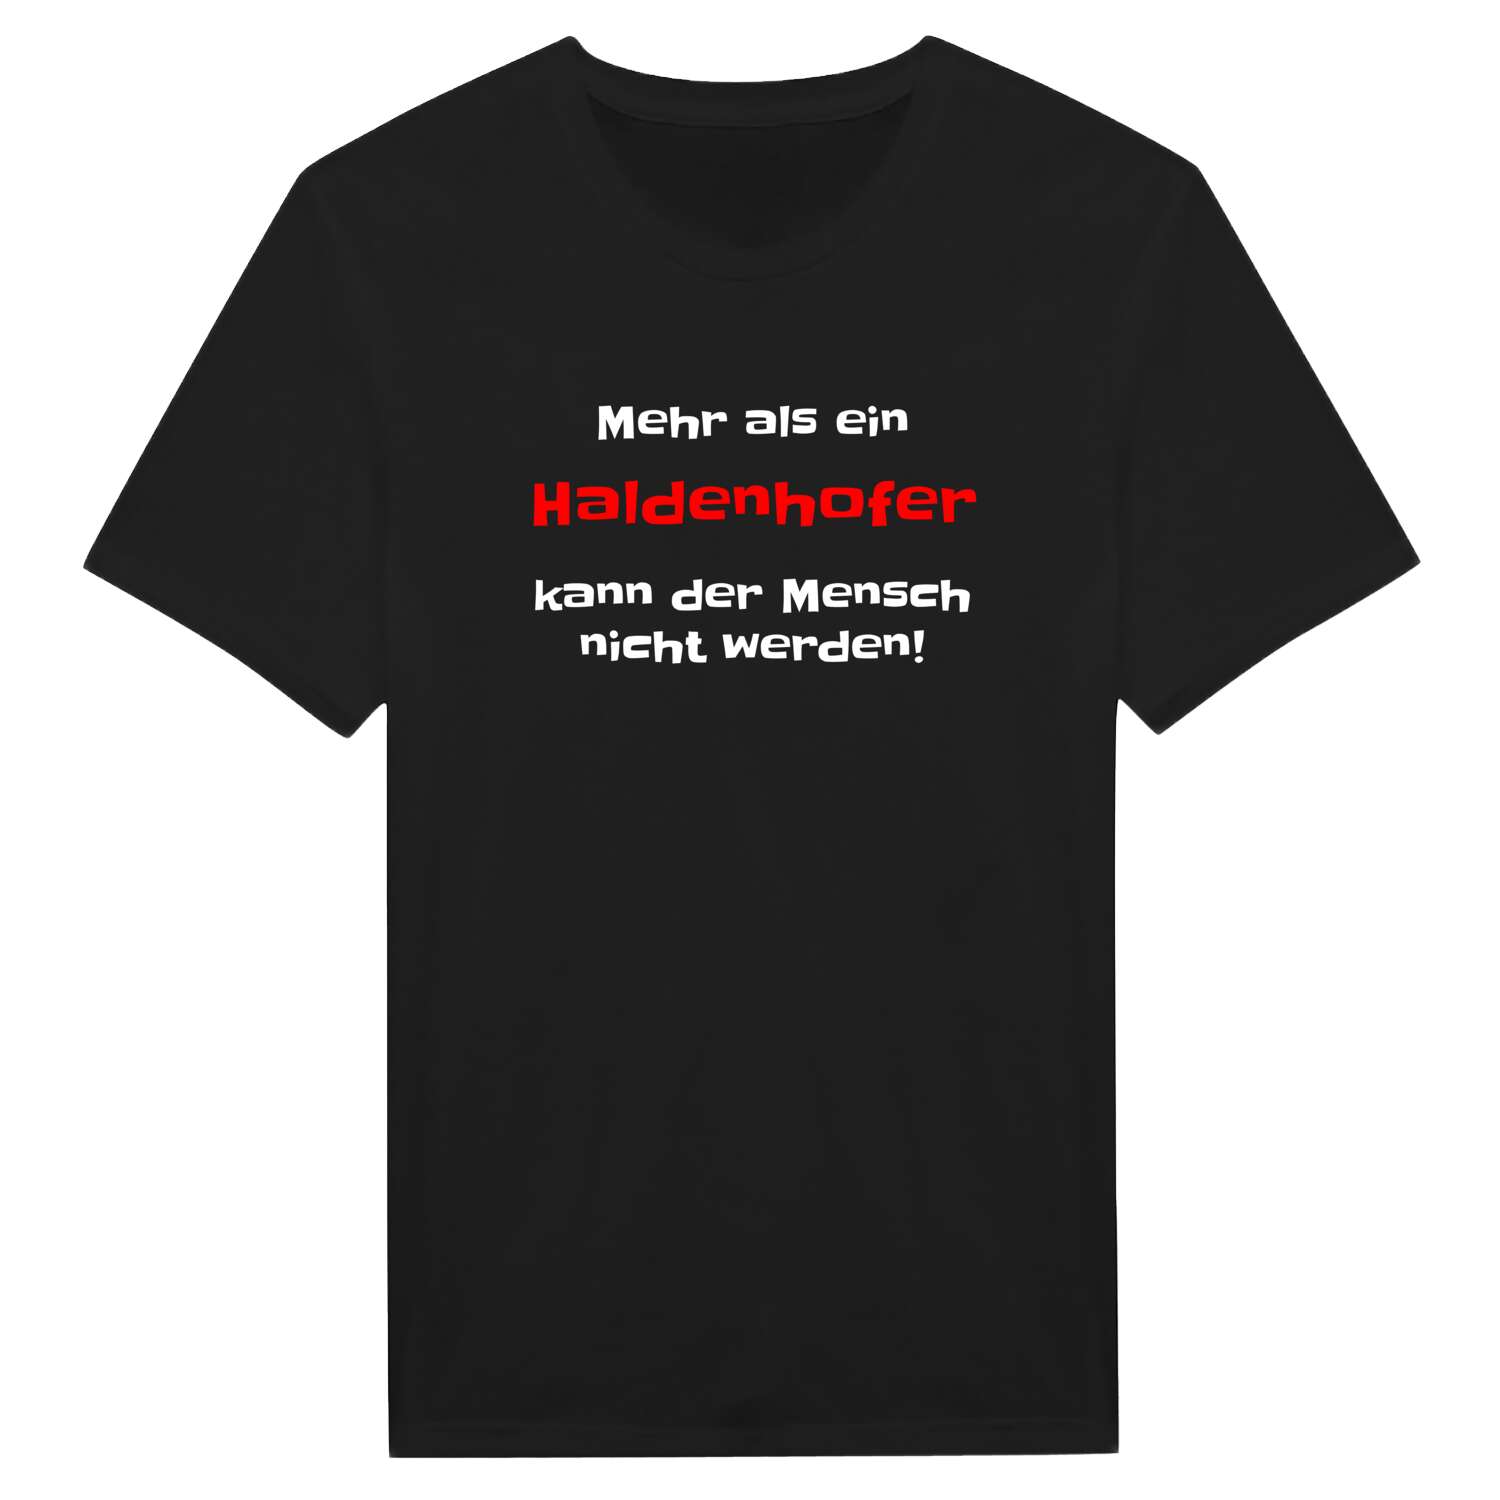 Haldenhof T-Shirt »Mehr als ein«